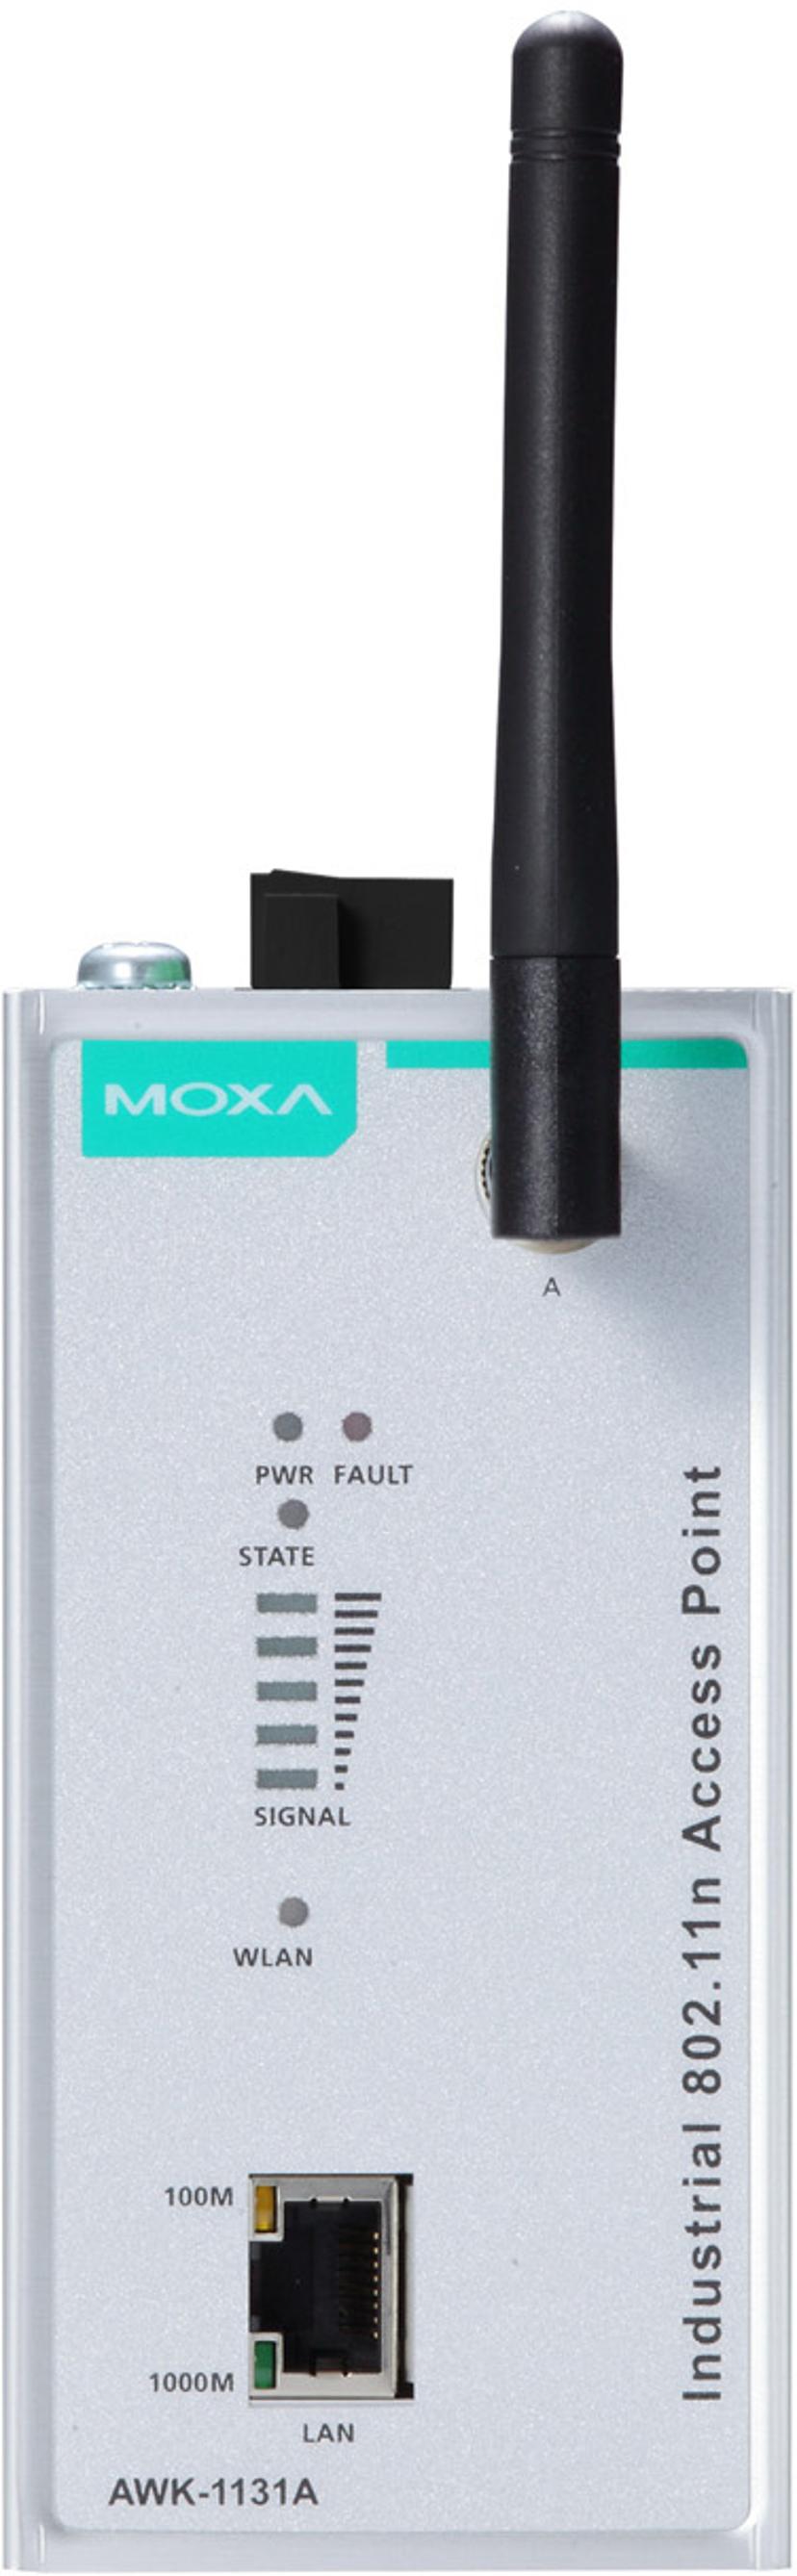 Moxa AWK-1131A teollisuustason tukiasema